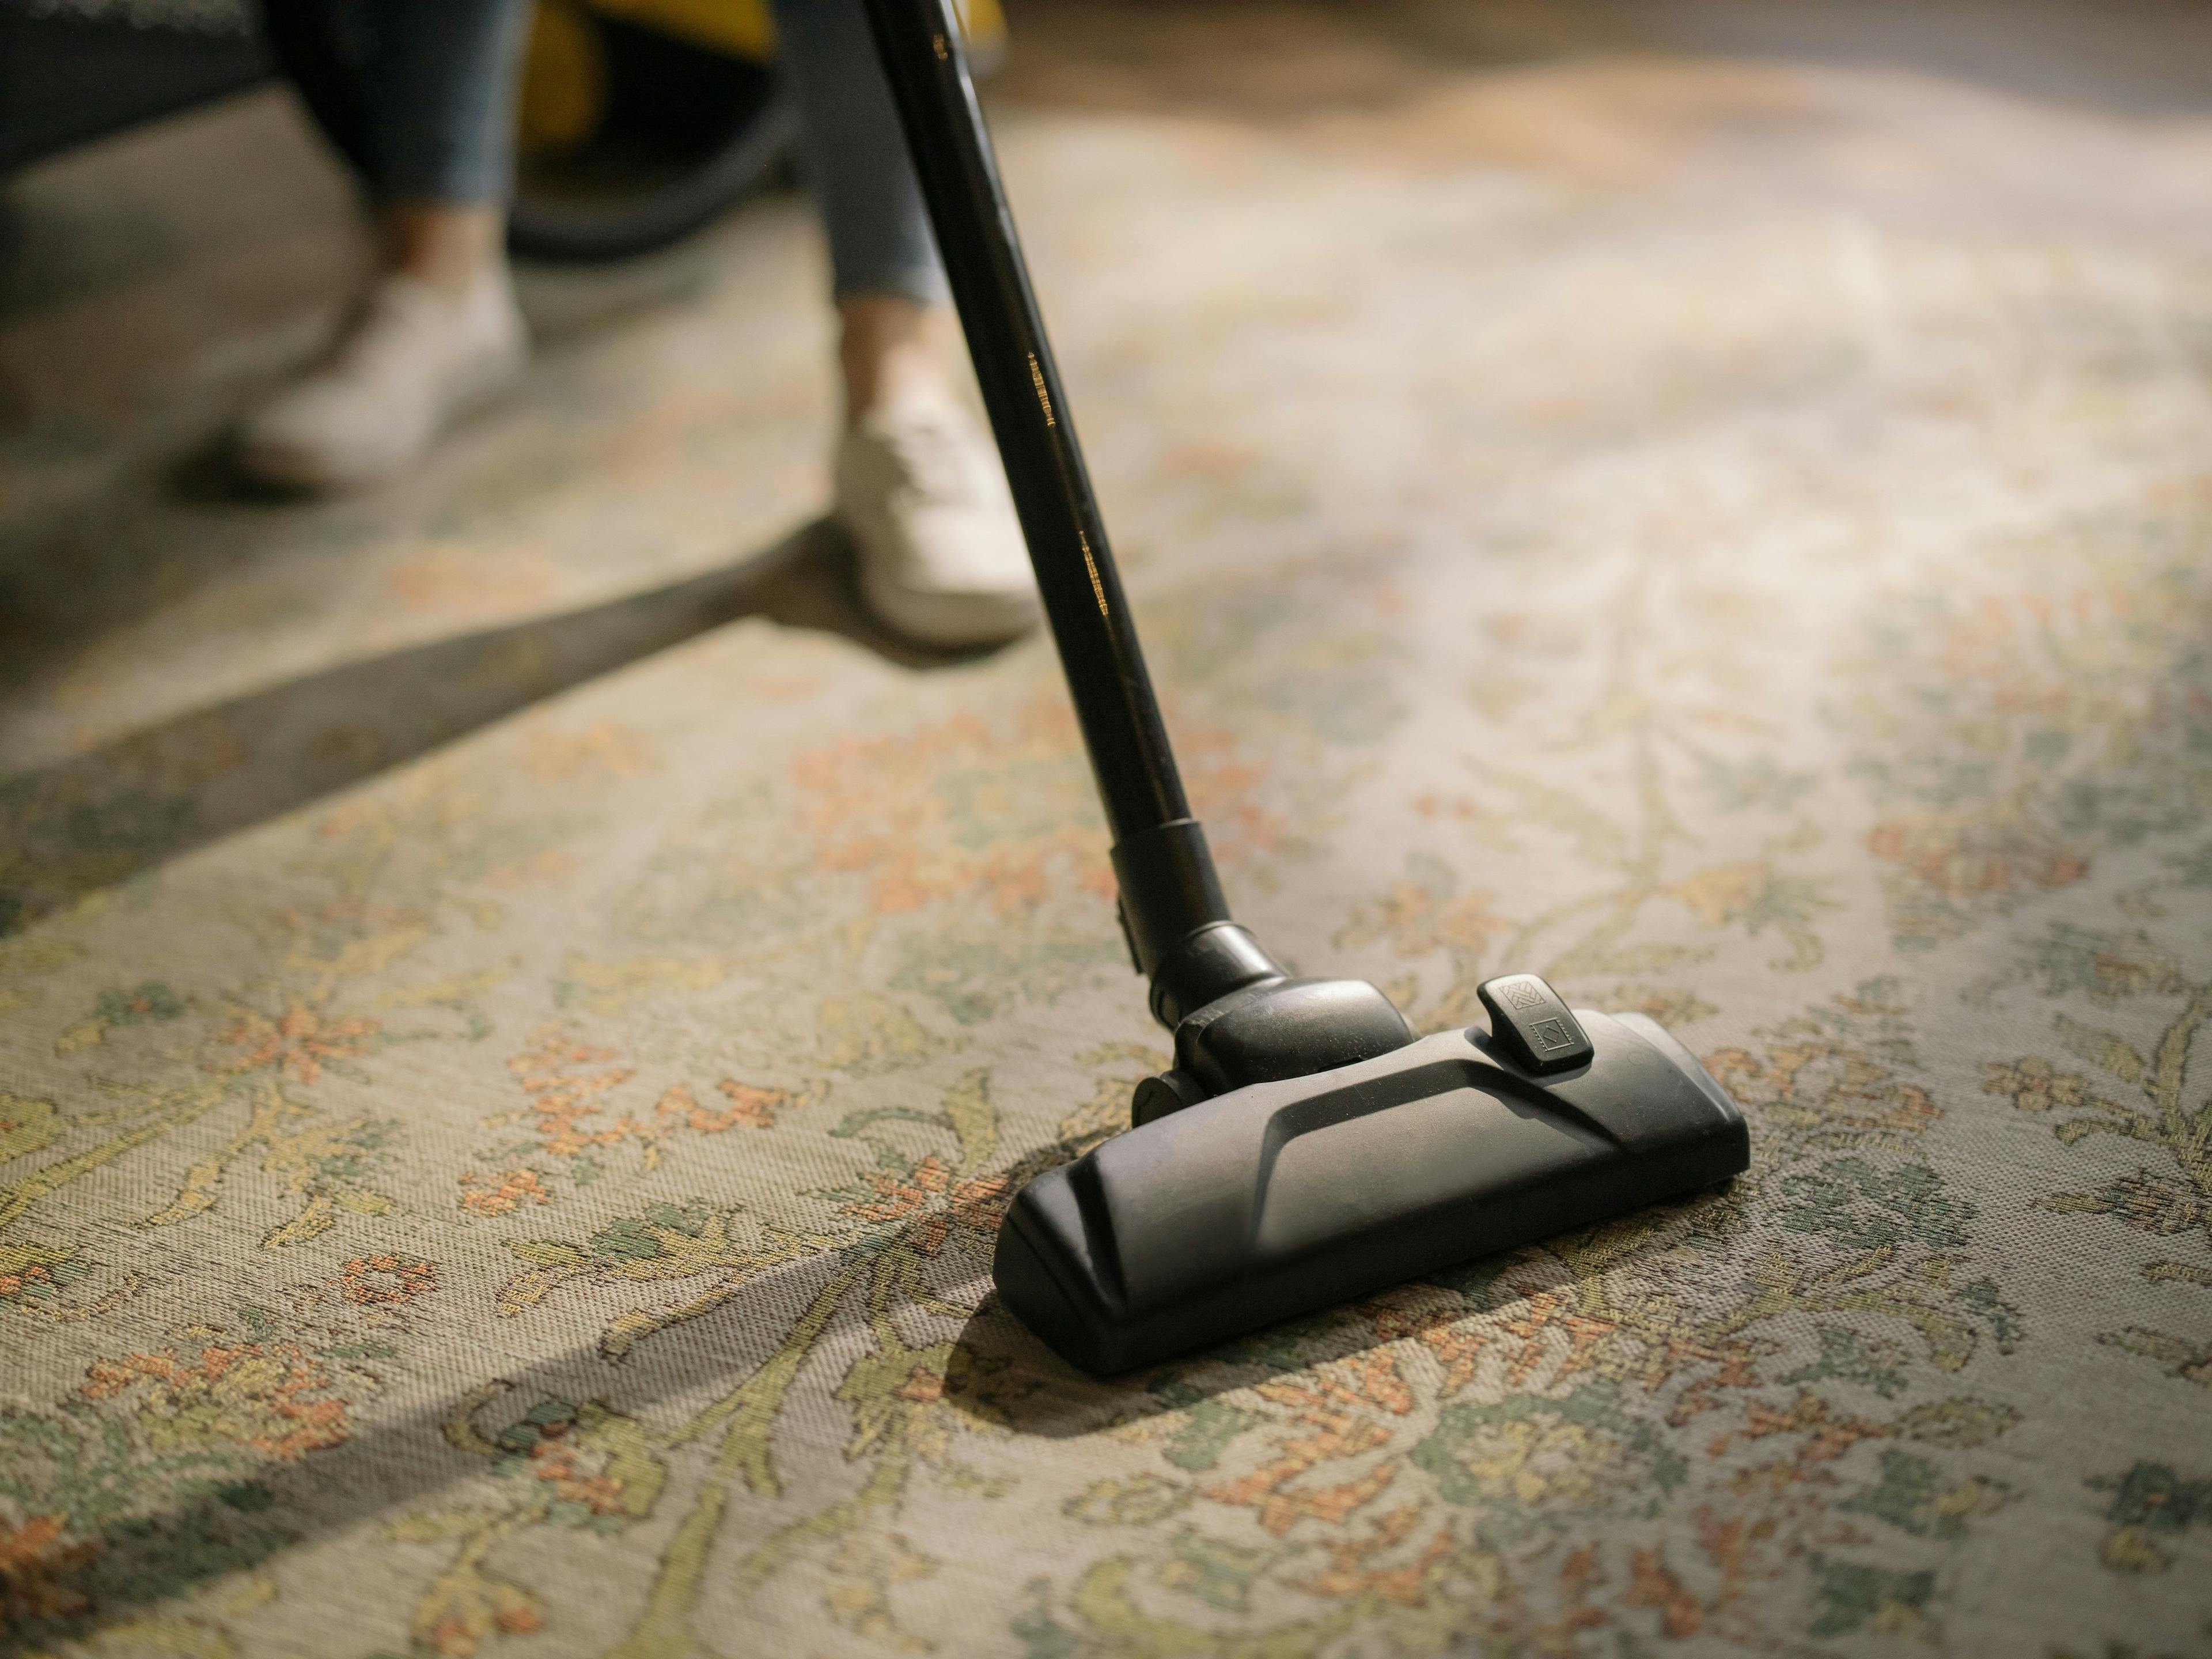 Wenn man Erbrochenes aus dem Teppich entfernen möchte, sollte man schnell handeln, um Schäden am Teppich zu vermeiden und den Kotzgeruch zu minimieren. 
